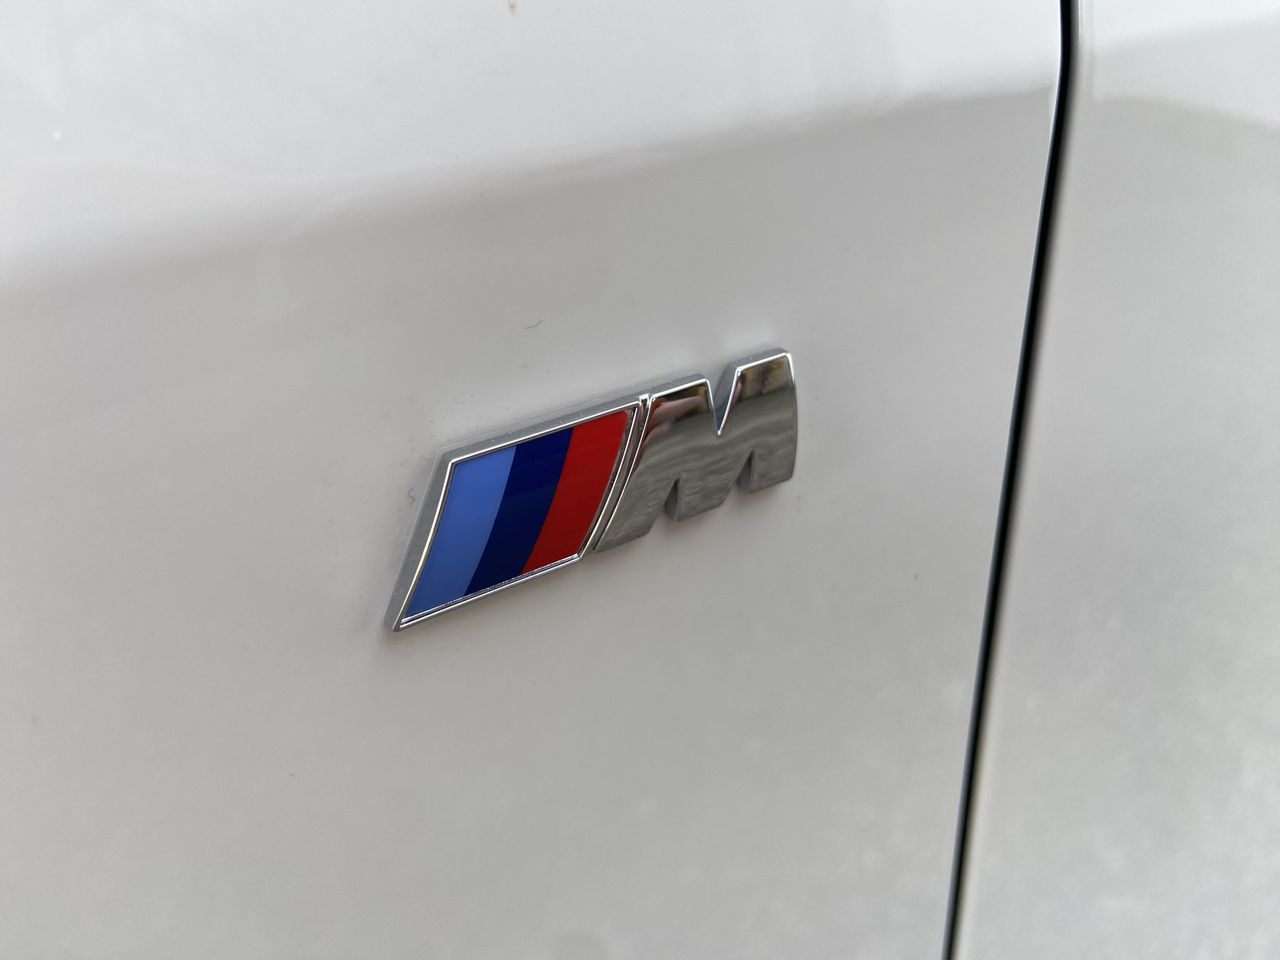 Foto BMW Serie 2 Coupé 10